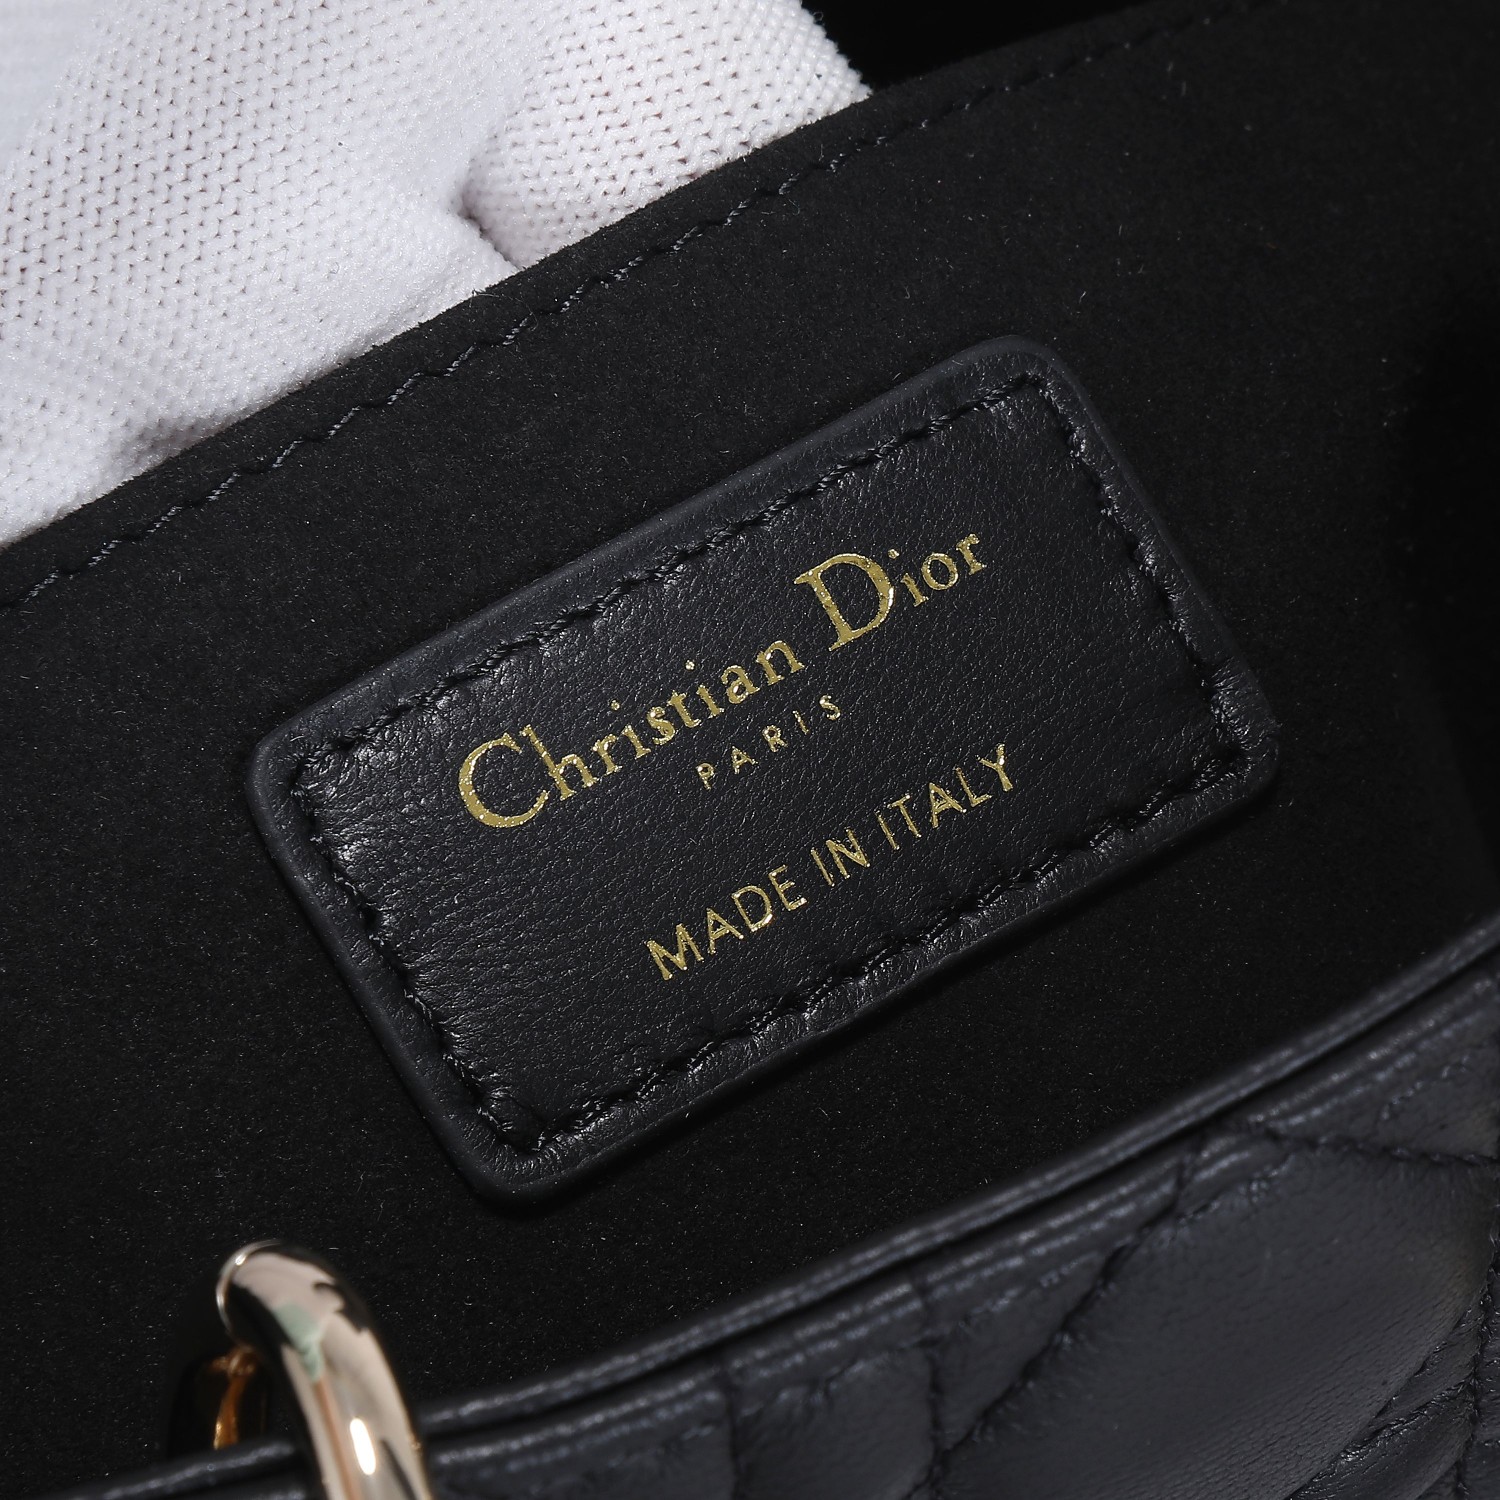 迪奥Dior顶级进口原厂皮戴妃包横款LadyD-Joy手袋凸显r系列标志性的简约美学体现了Dior对优雅